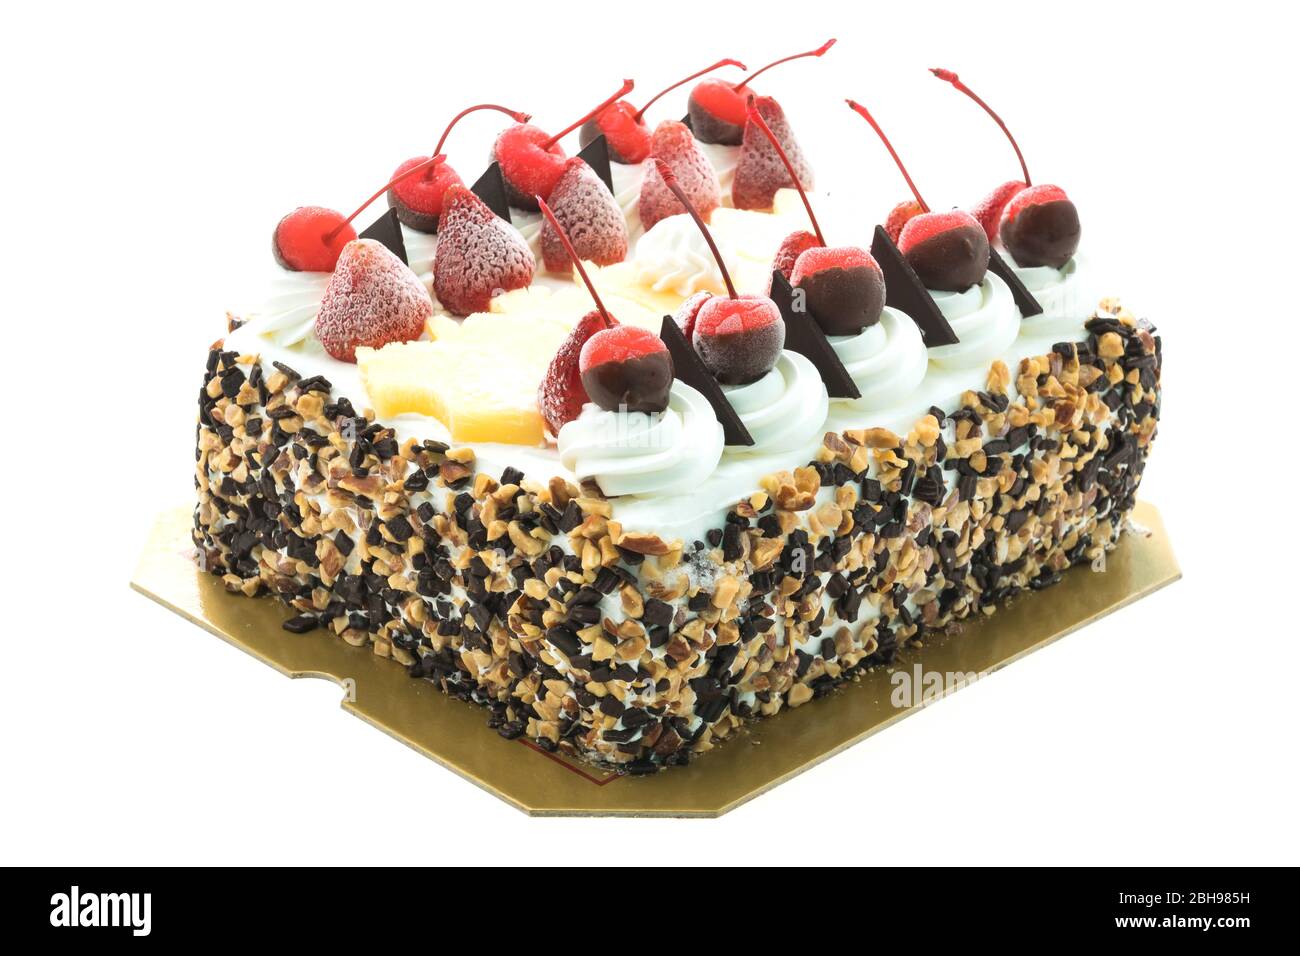 Ice cream cake with cherry on top Stock Photo